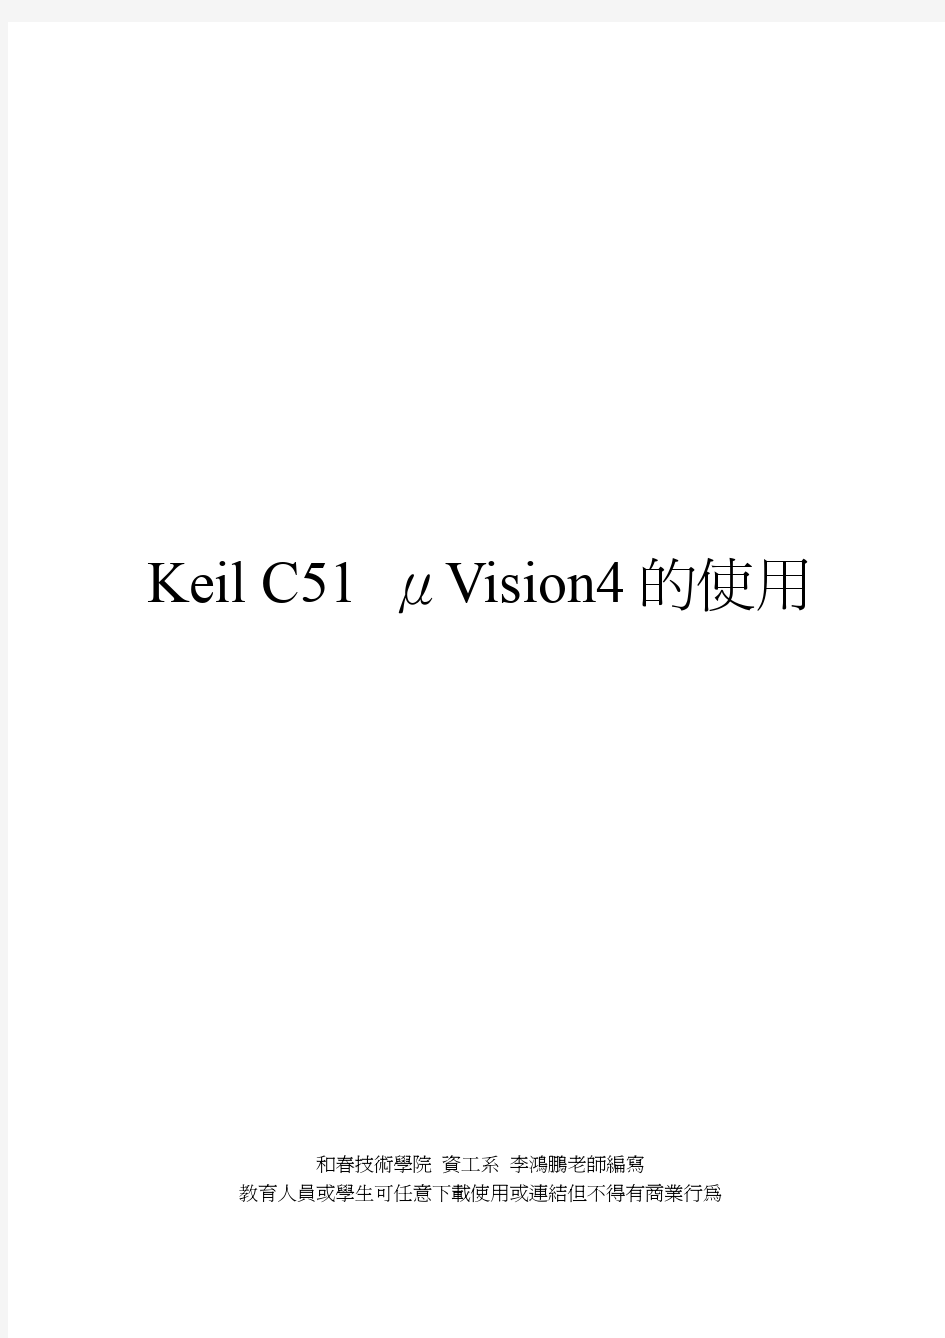 Keil C51 uVision4